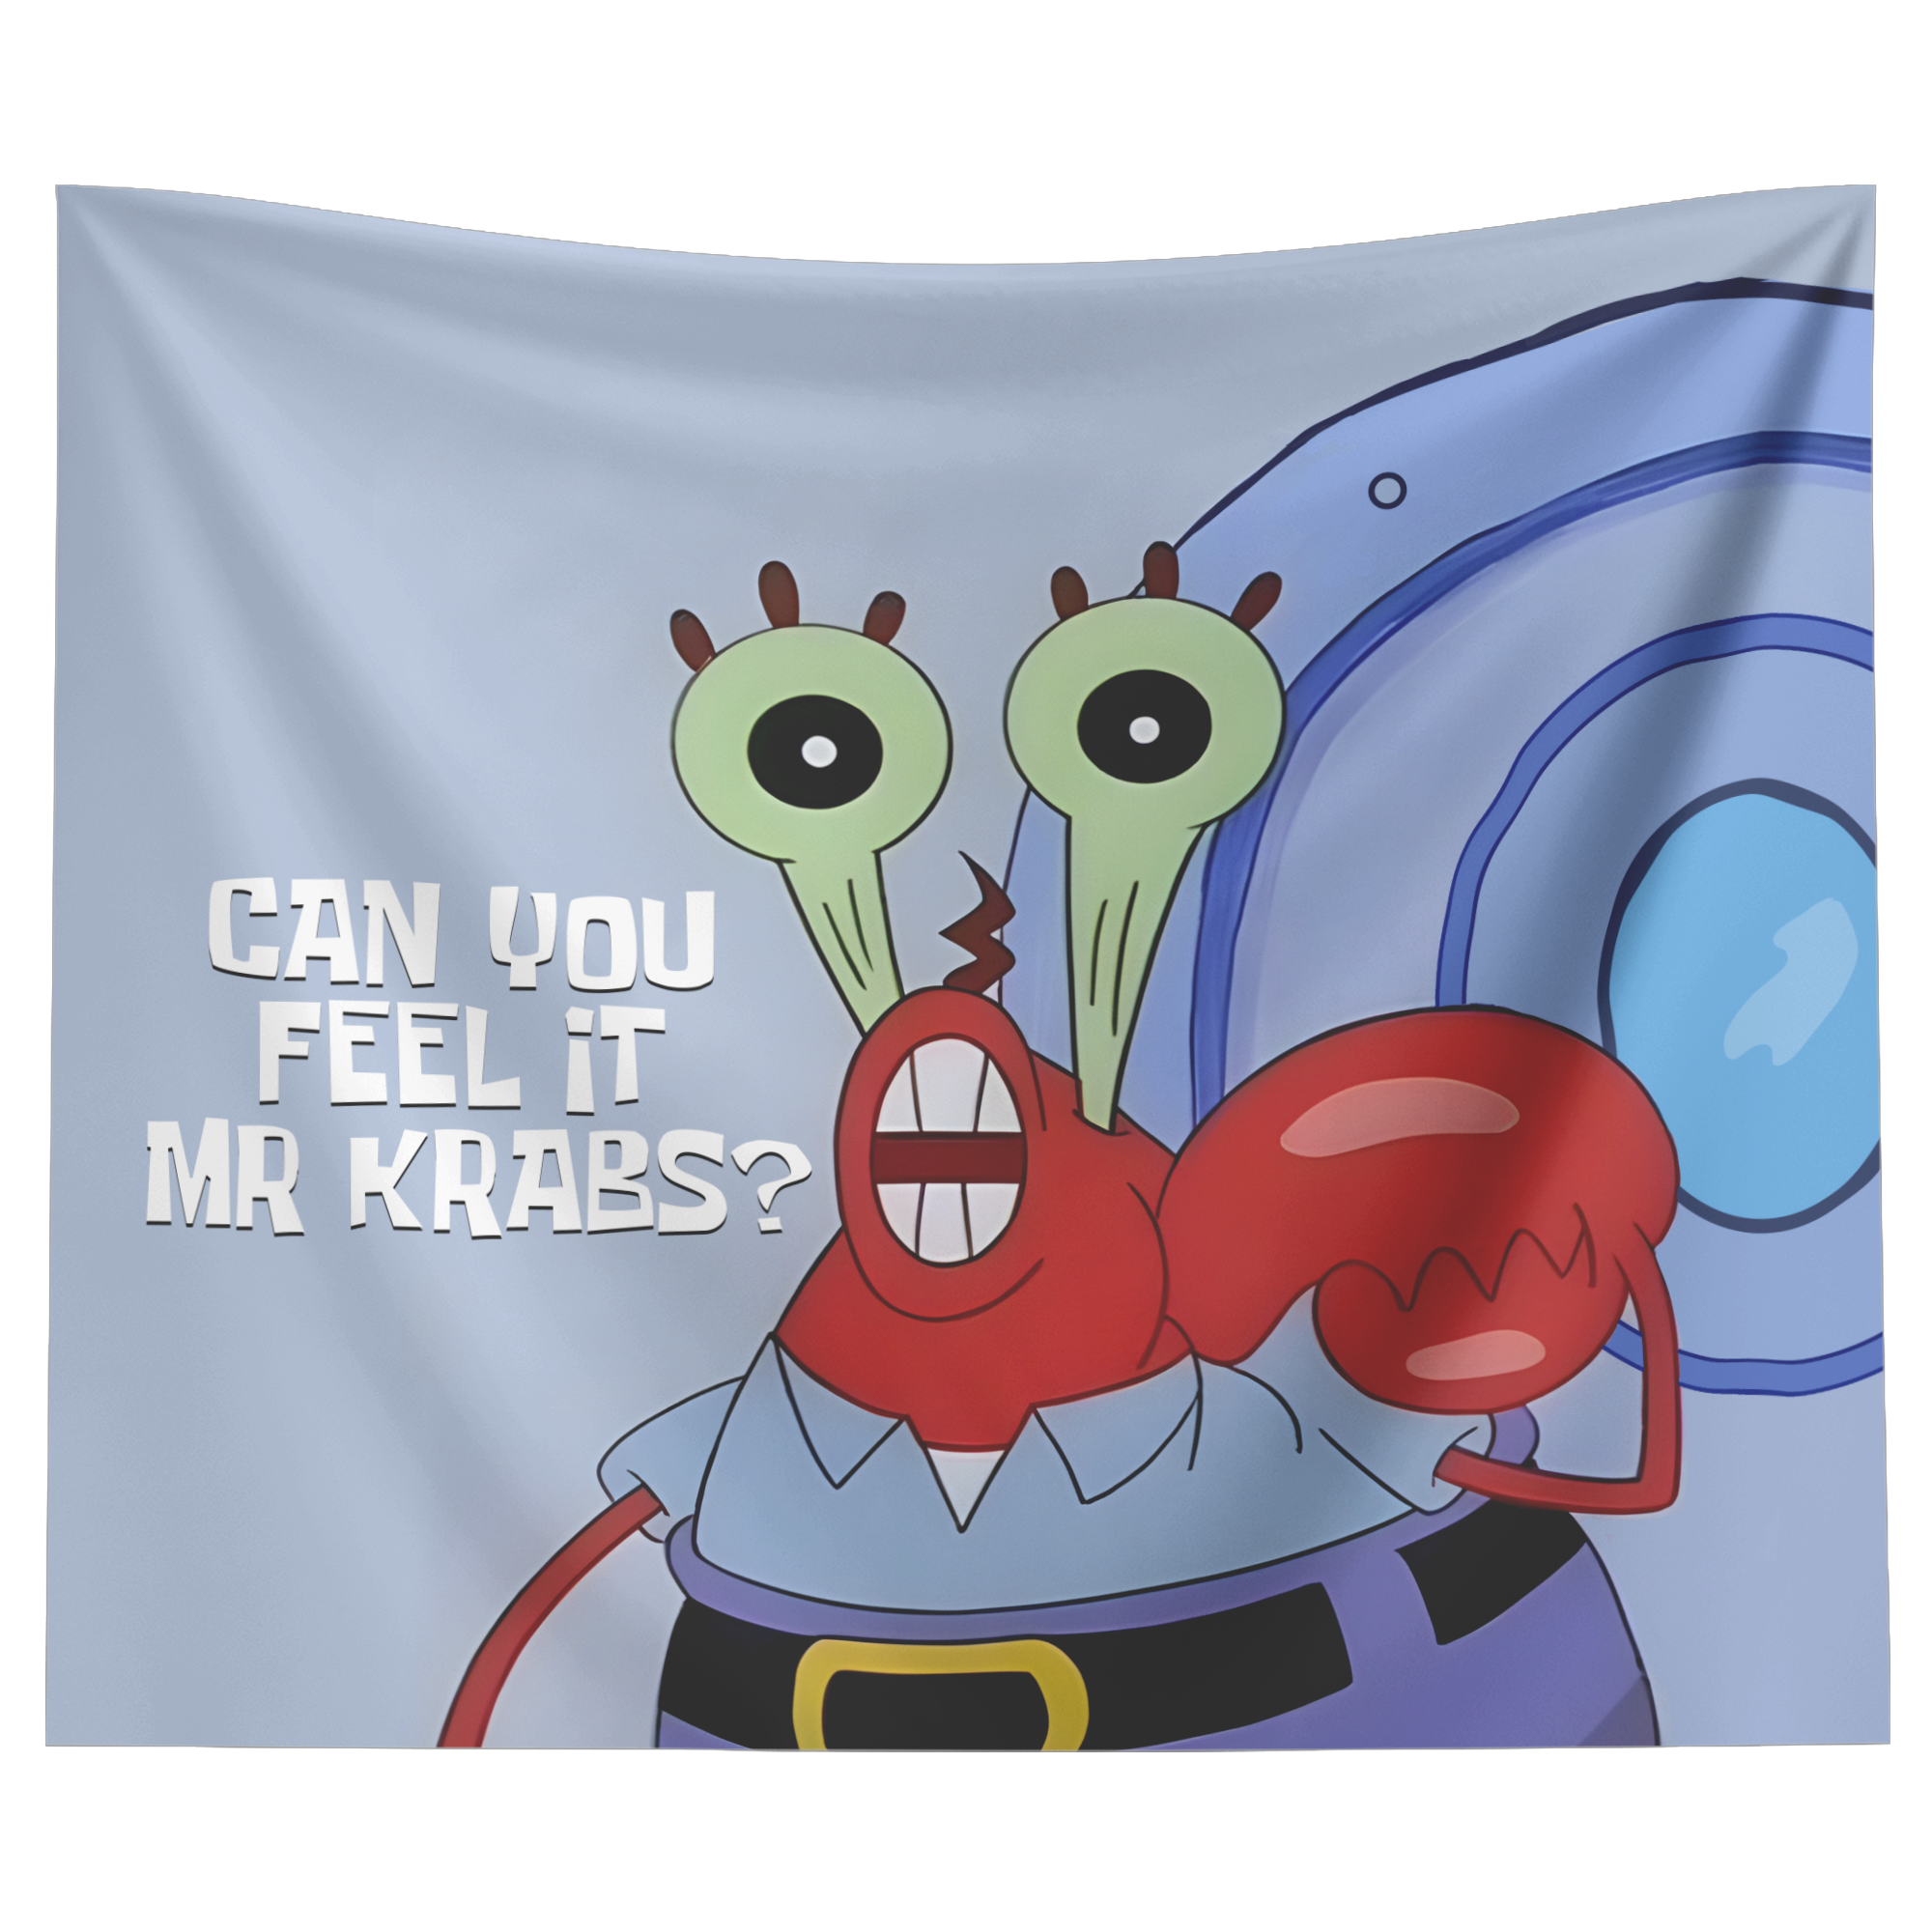 are you feeling it now mr krabs feels